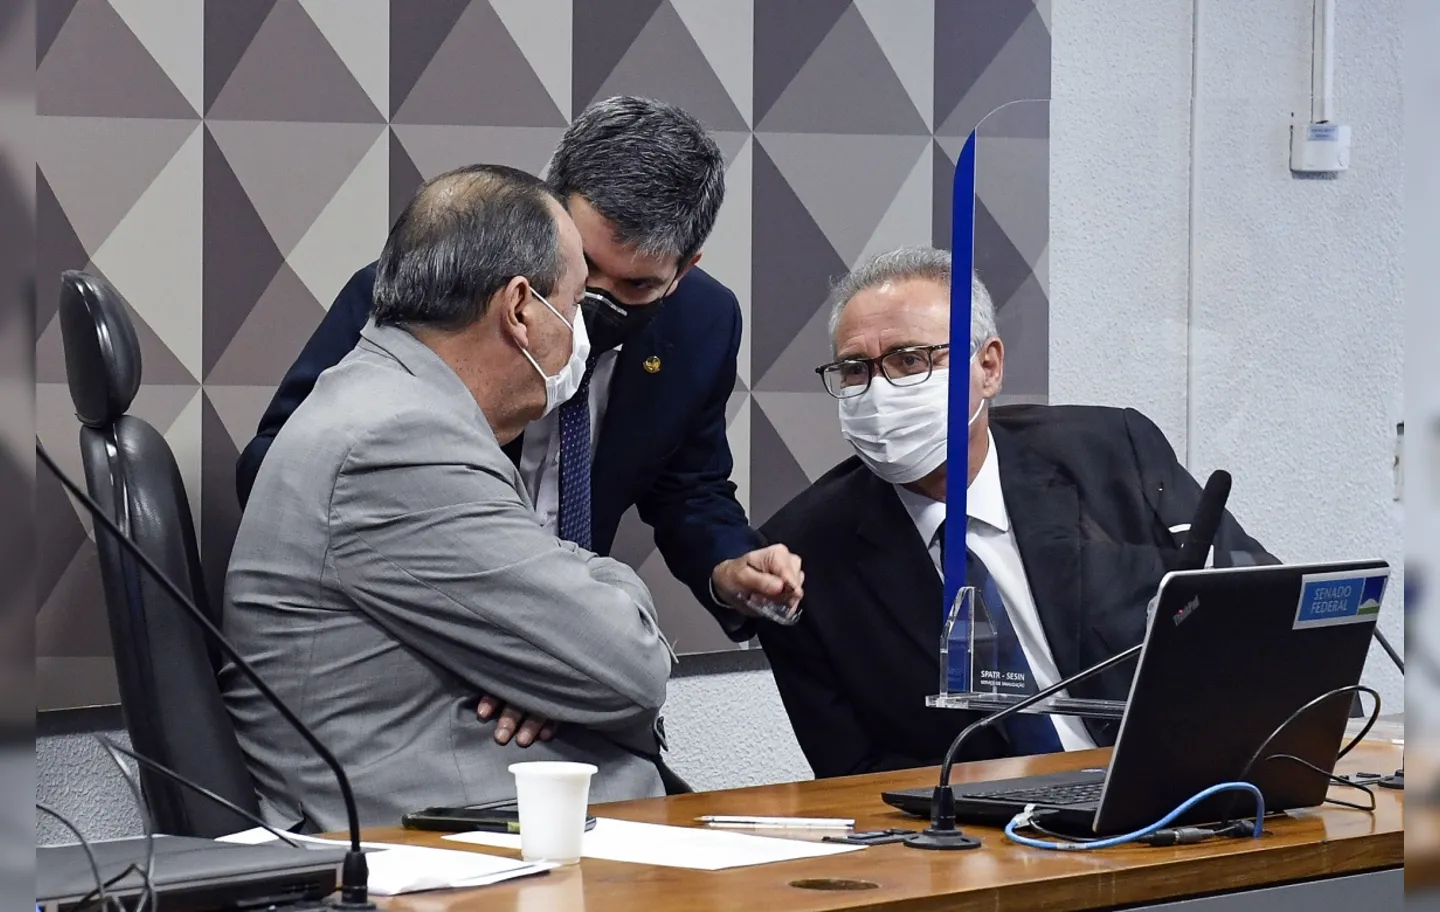 Relatório do Coaf foi encaminhado à CPI da Covid no Senado | Foto: Roque de Sá | Agência Senado